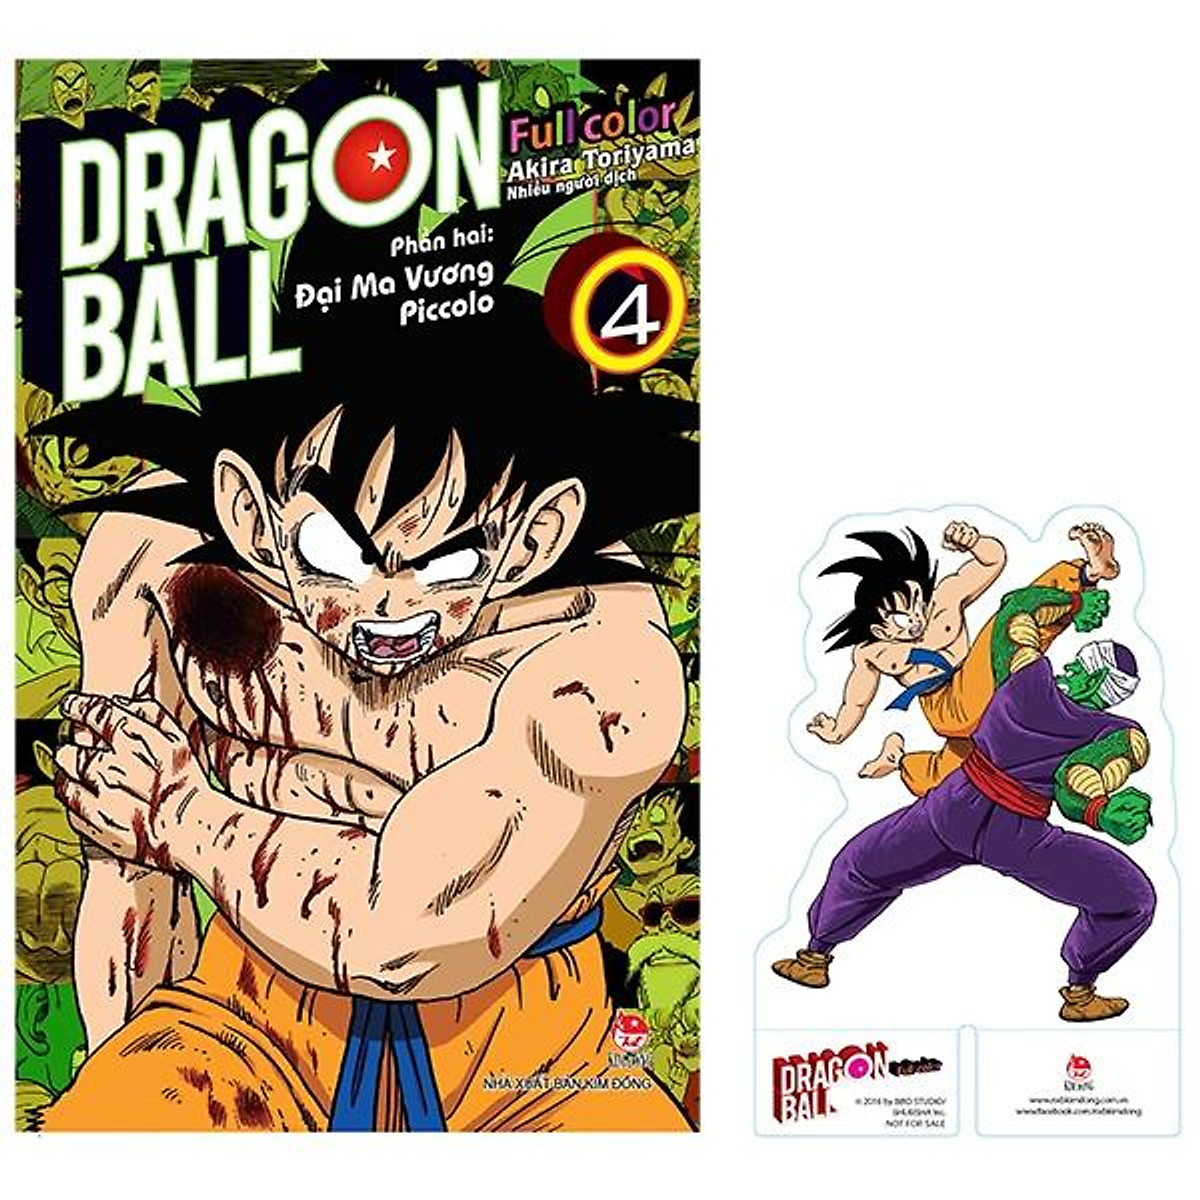 Mua Dragon Ball Full Color - Phần Hai: Đại Ma Vương Piccolo - Tập 4 - Tặng  Kèm Standee Pvc | Tiki